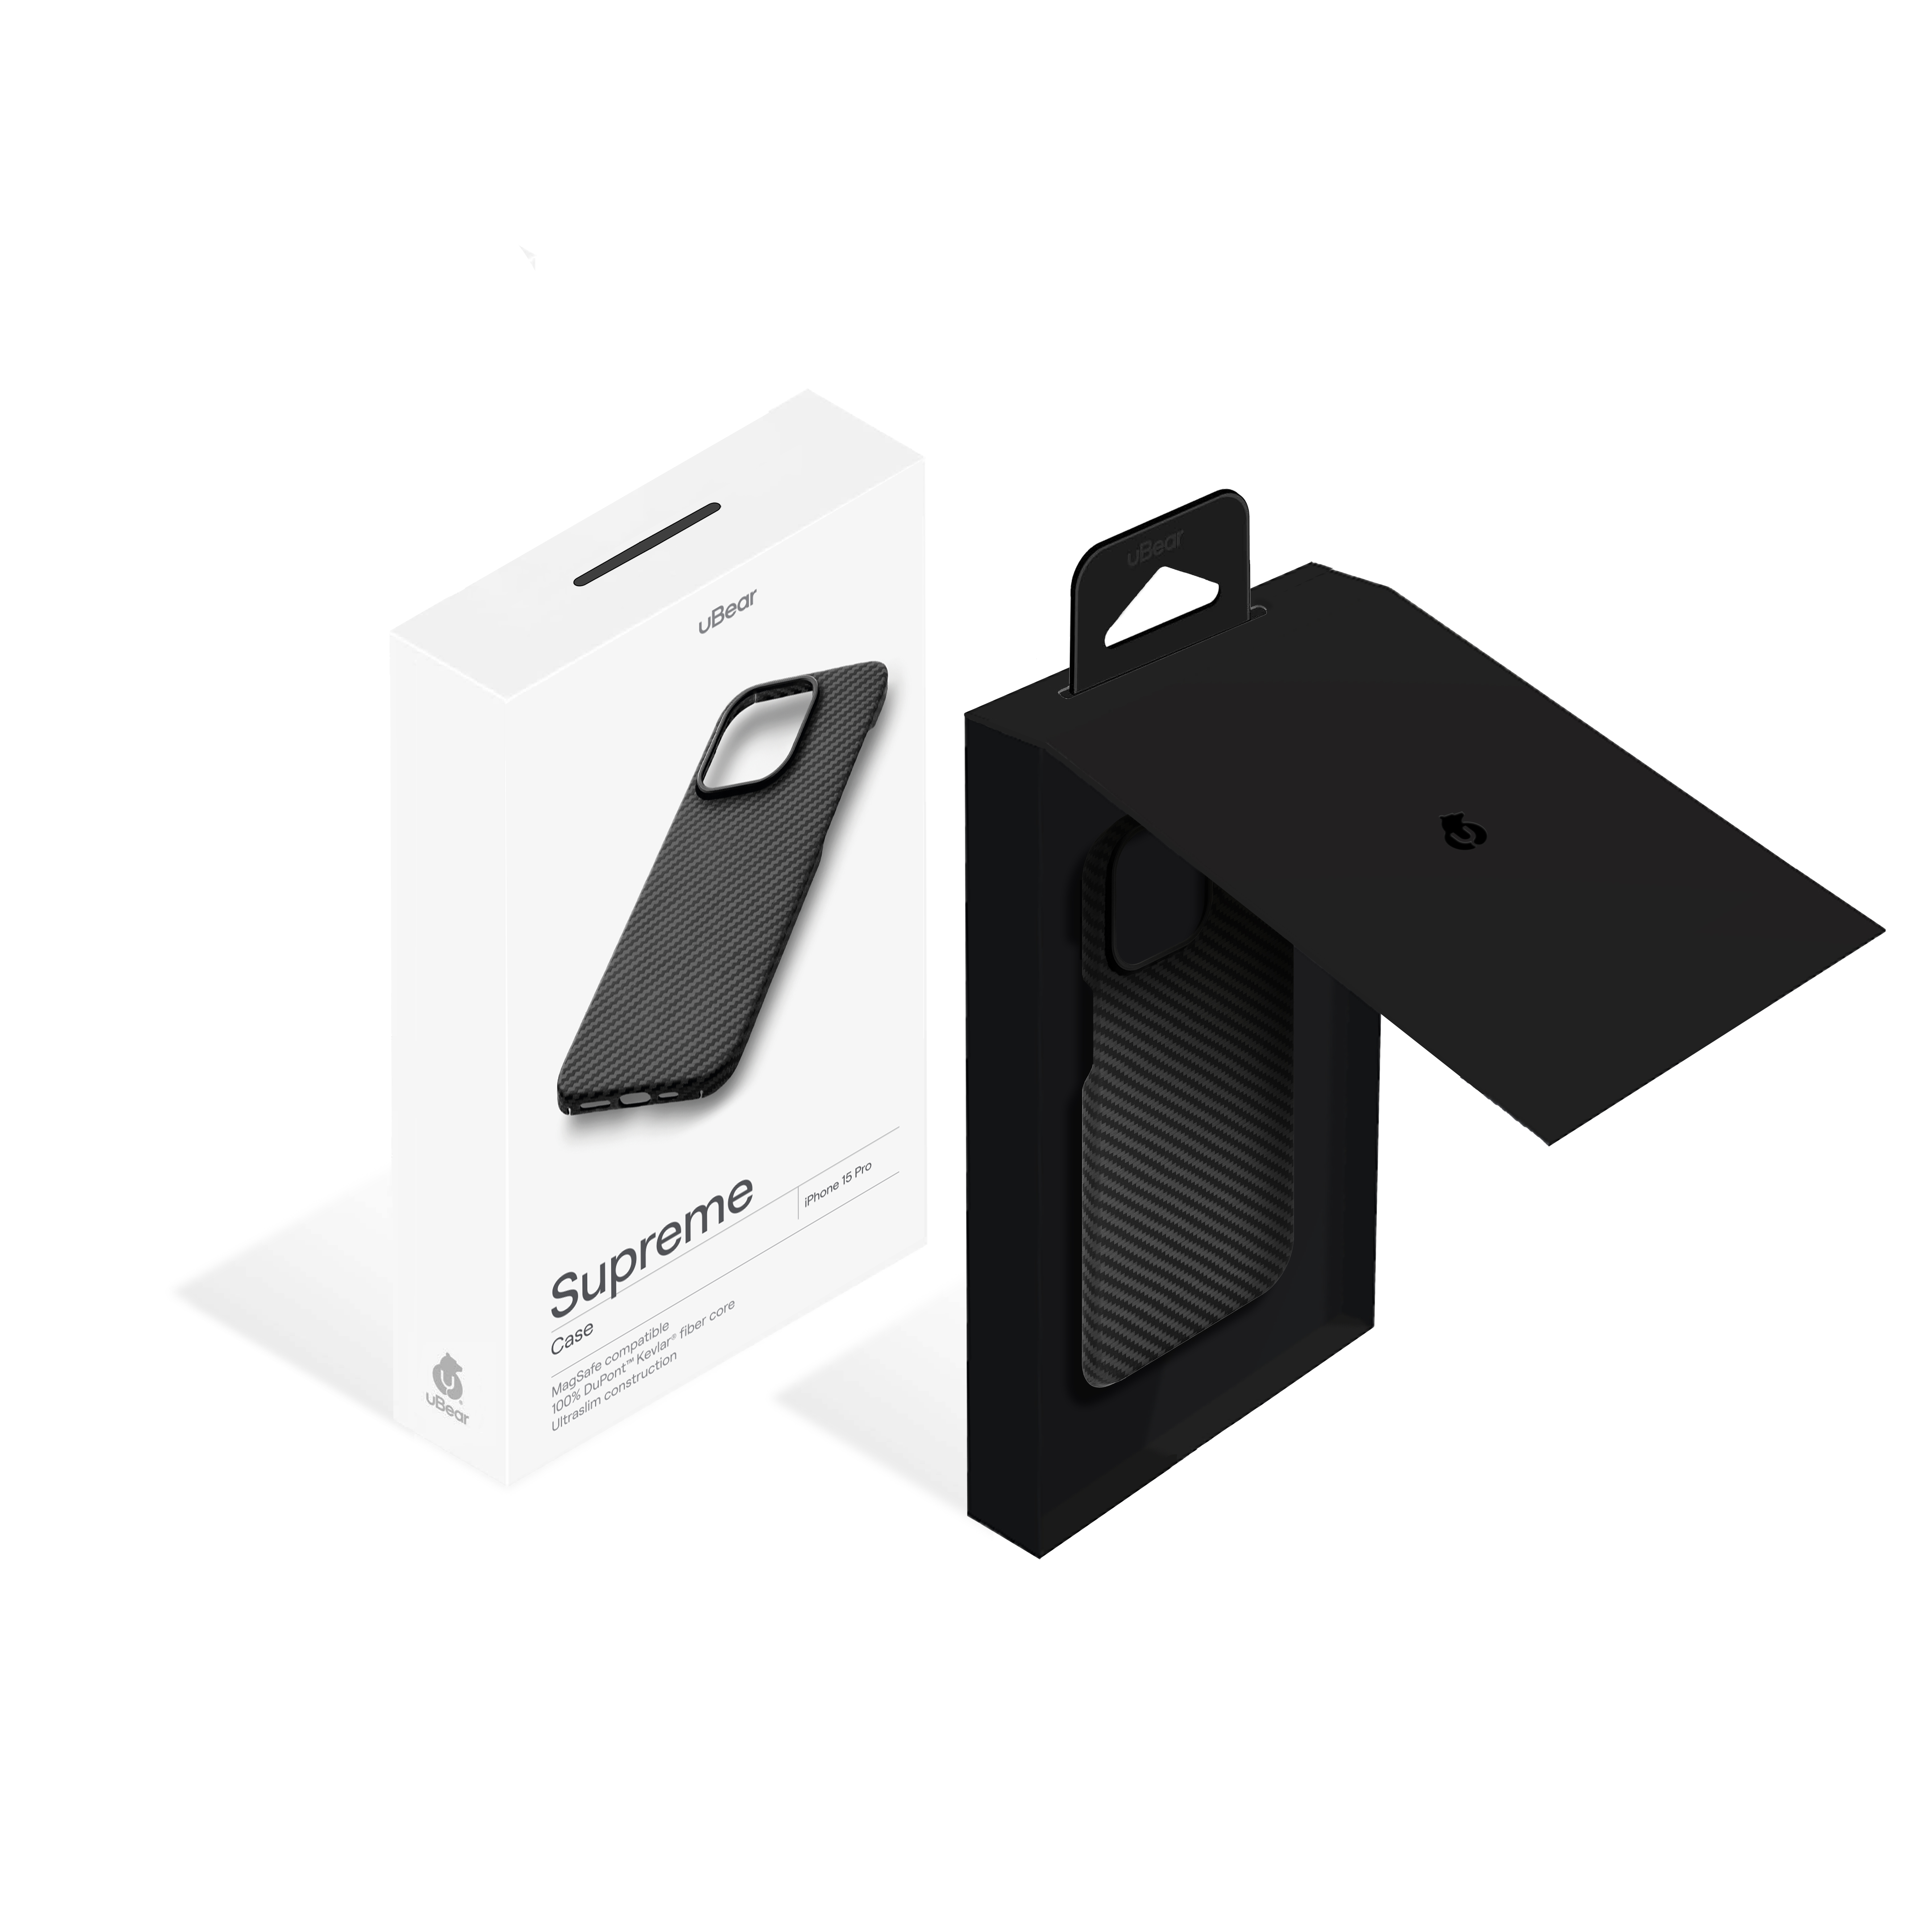 Чехол защитный uBear Supreme Case для iPhone 15 Pro, ультратонкий, материал Кевлар, MagSafe совместимый